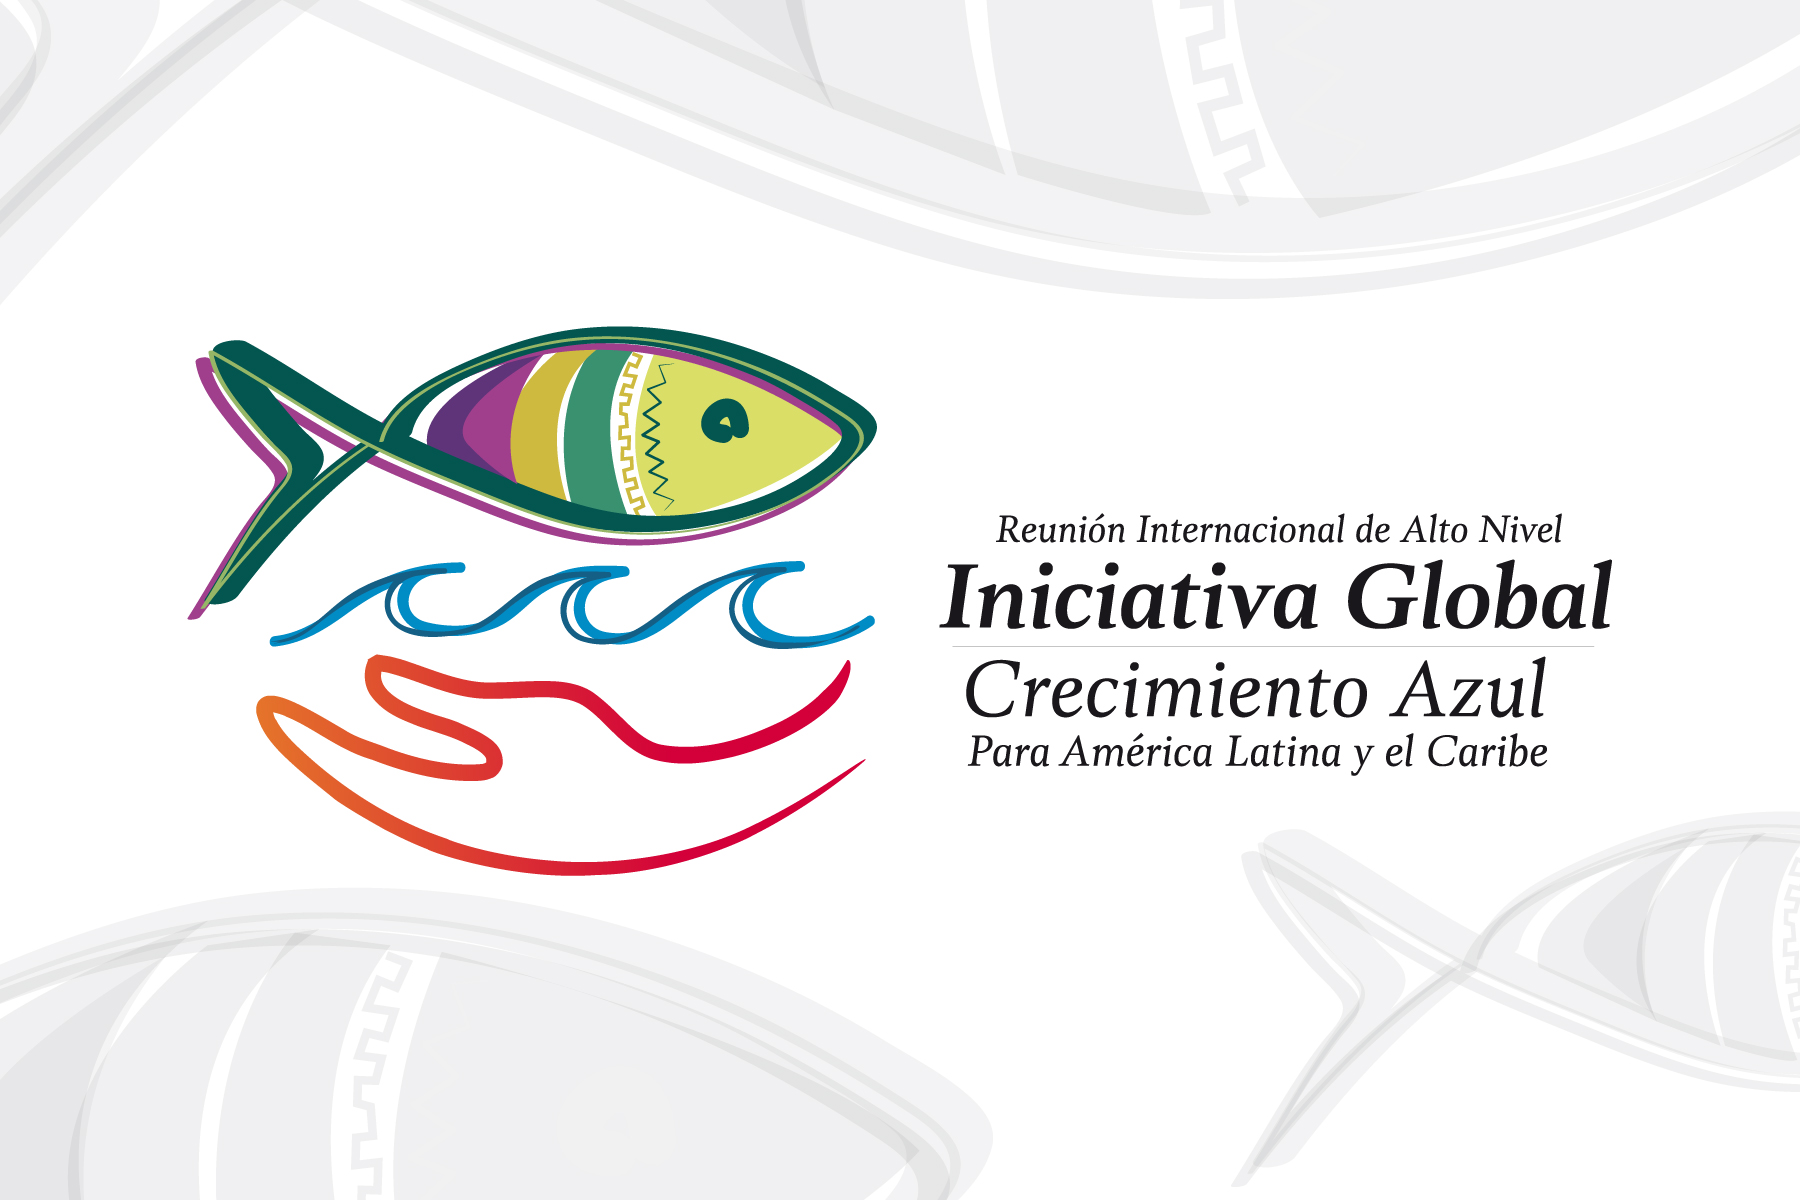 La Comisión Nacional de Acuacultura y Pesca de México es anfitriona de la principal reunión sobre la actividad en América Latina y el Caribe, que aporta el 12% de la producción pesquera y casi el 4% de la producción acuícola global.